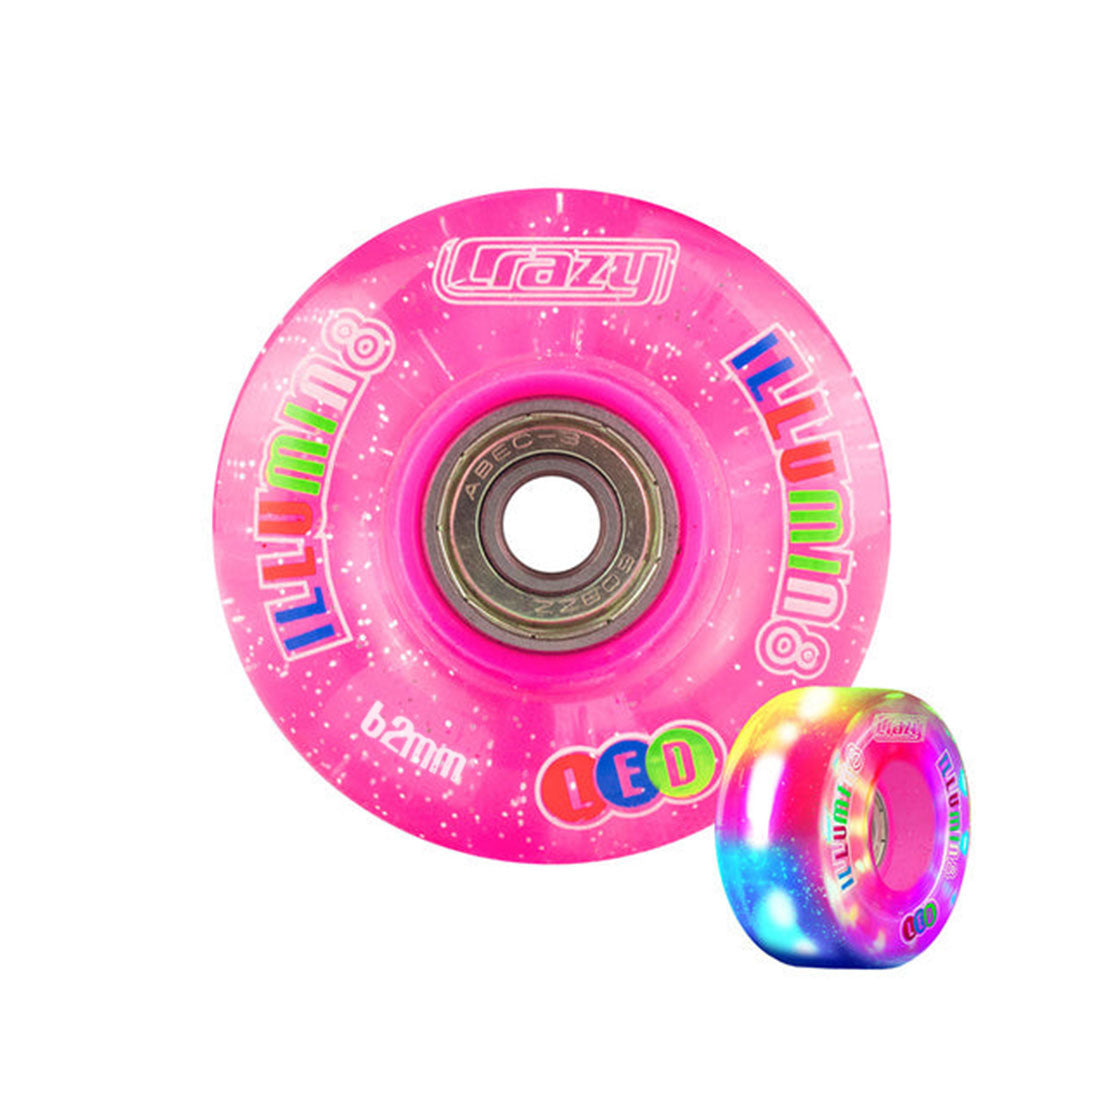 Crazy Illumin8 62mm LED Light Up Wheels 2pk Glitter Pink Roller Skate Wheels